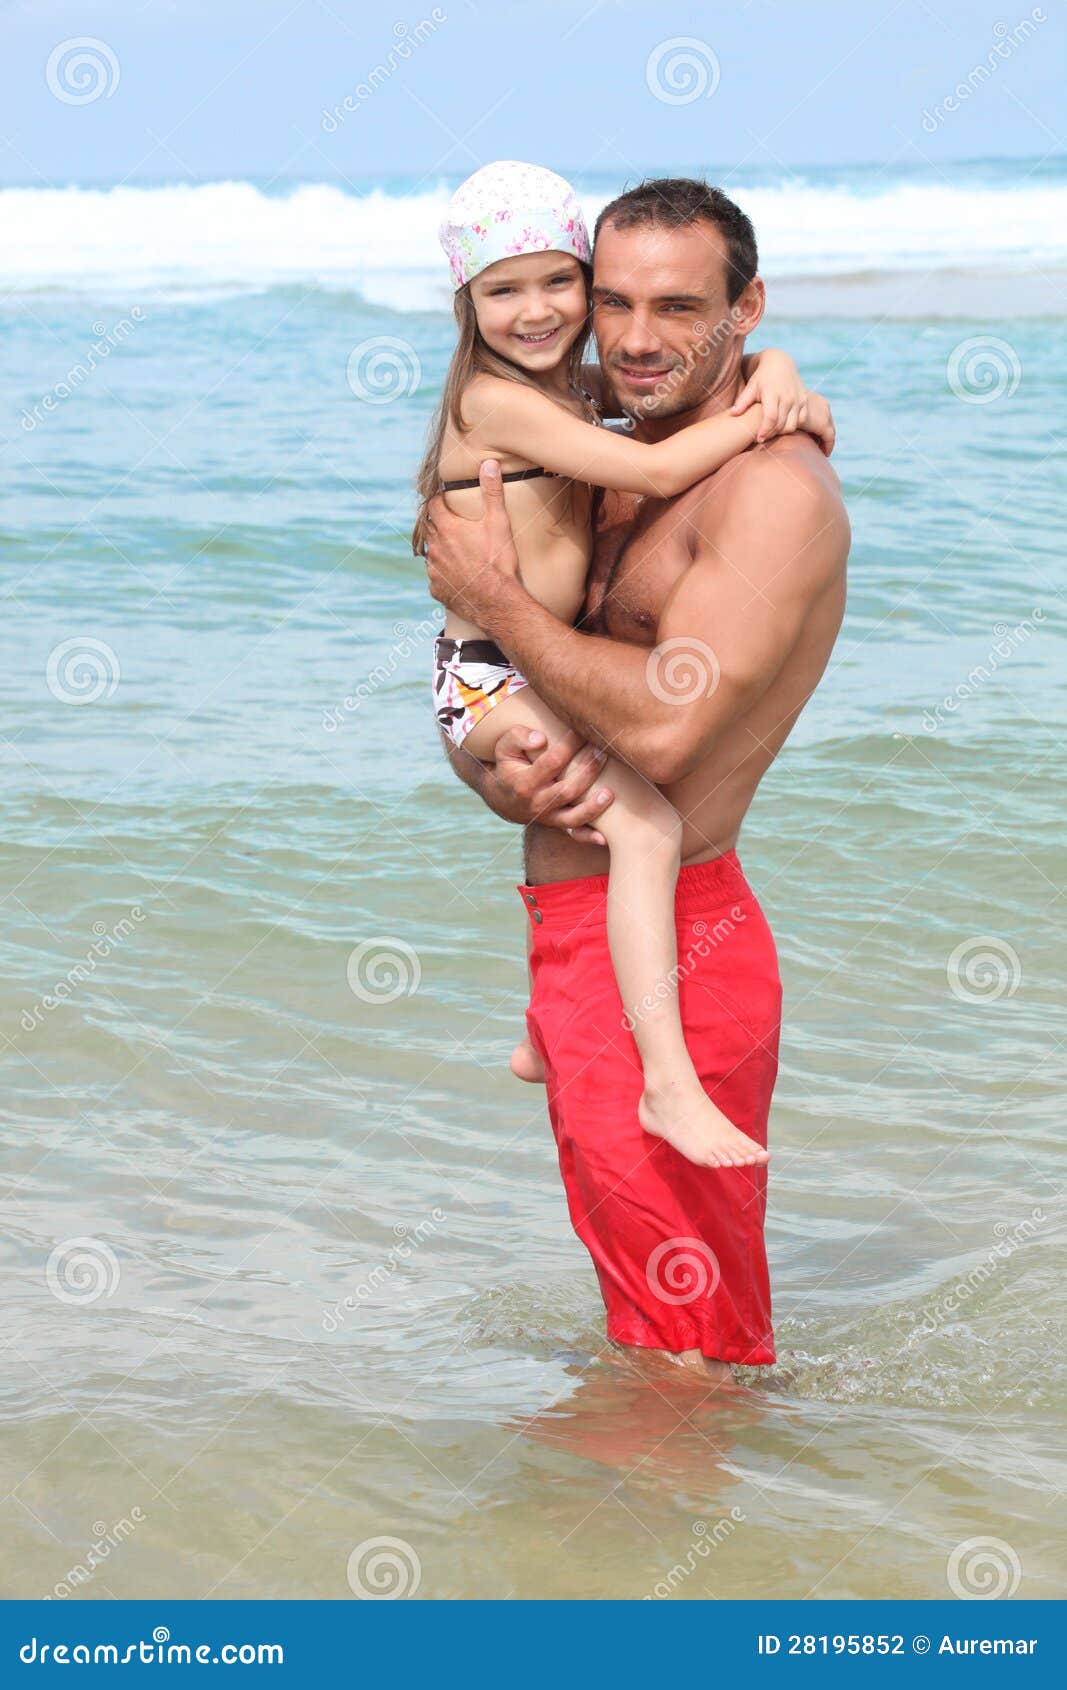 дочка с папой на голом пляже фото 91